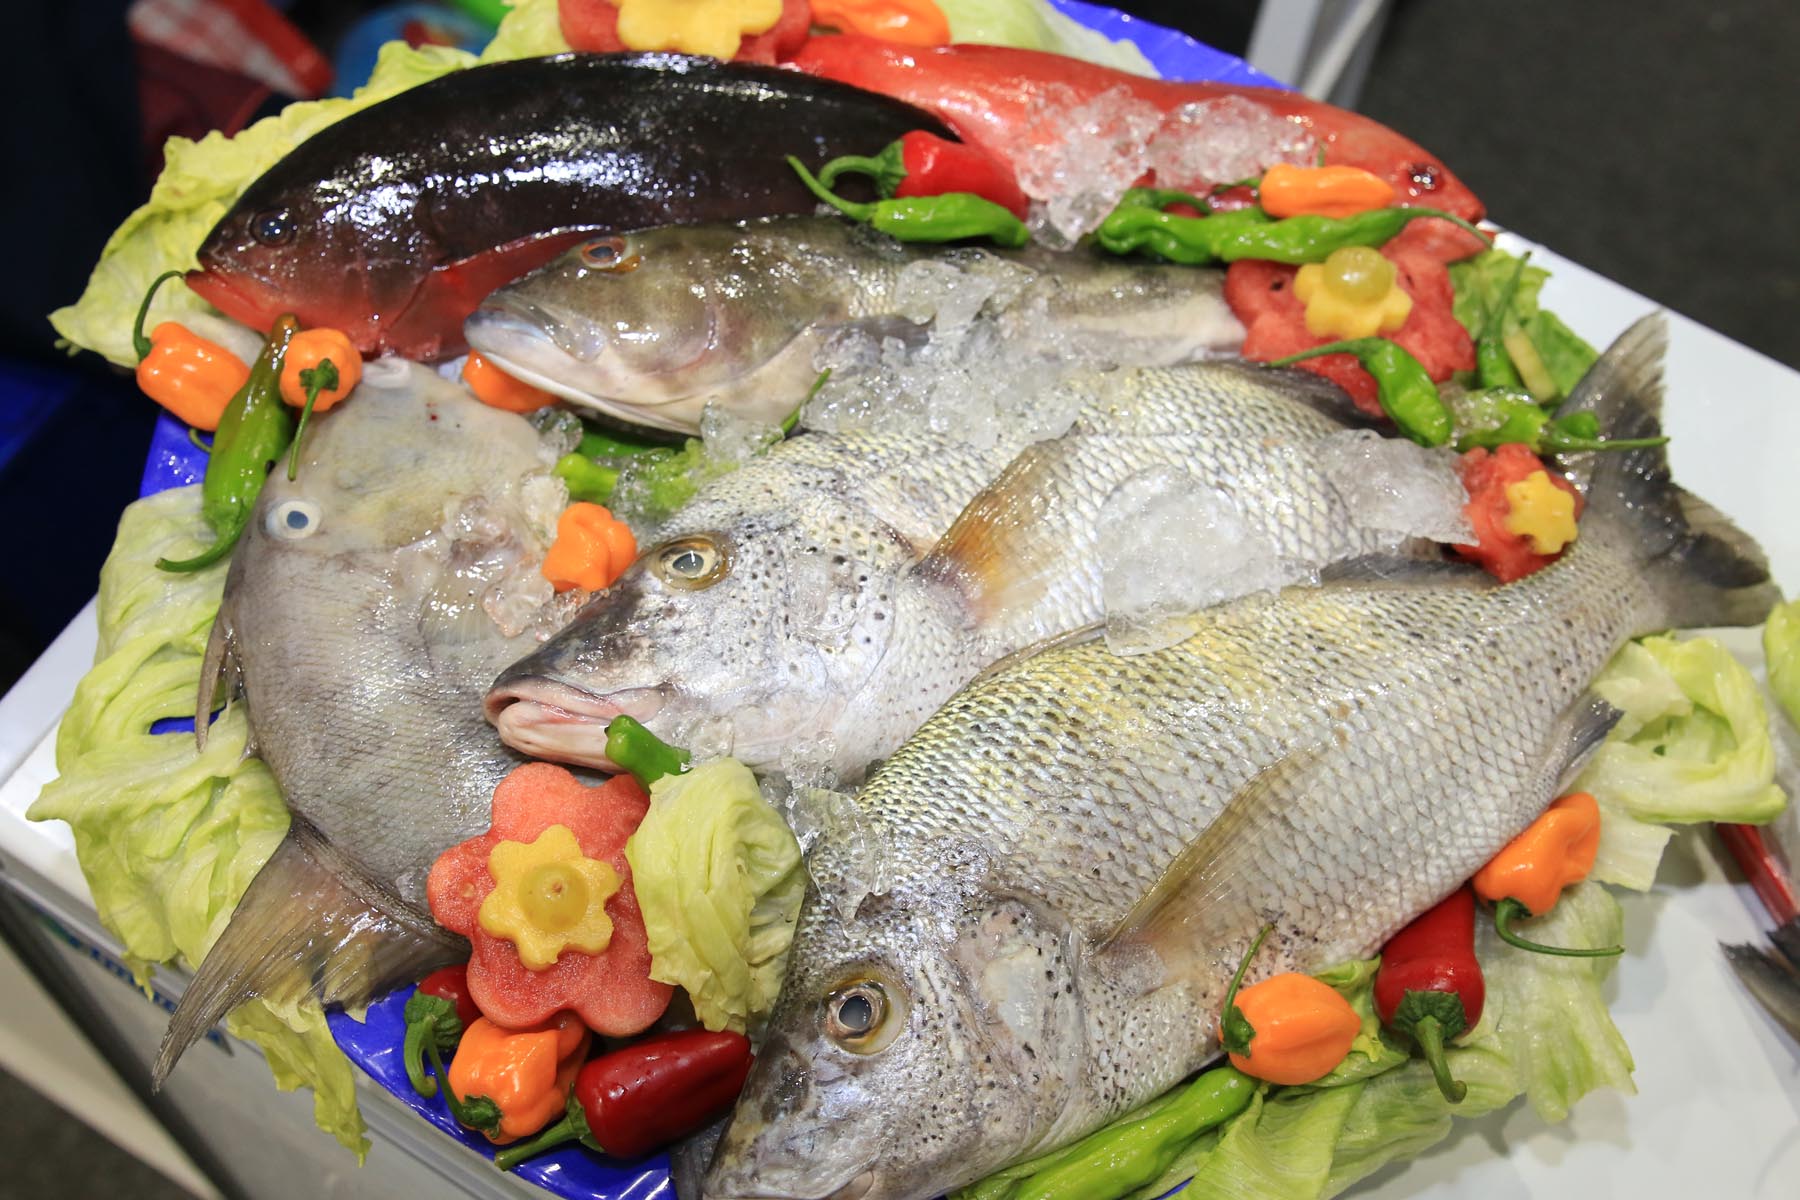 La Comisión Nacional de Acuacultura y Pesca (CONAPESCA) se reportó lista para participar, junto con los productores pesqueros y acuícolas de todo el país, en la tercera edición de la feria “México Alimentaria 2018 Food Show”.